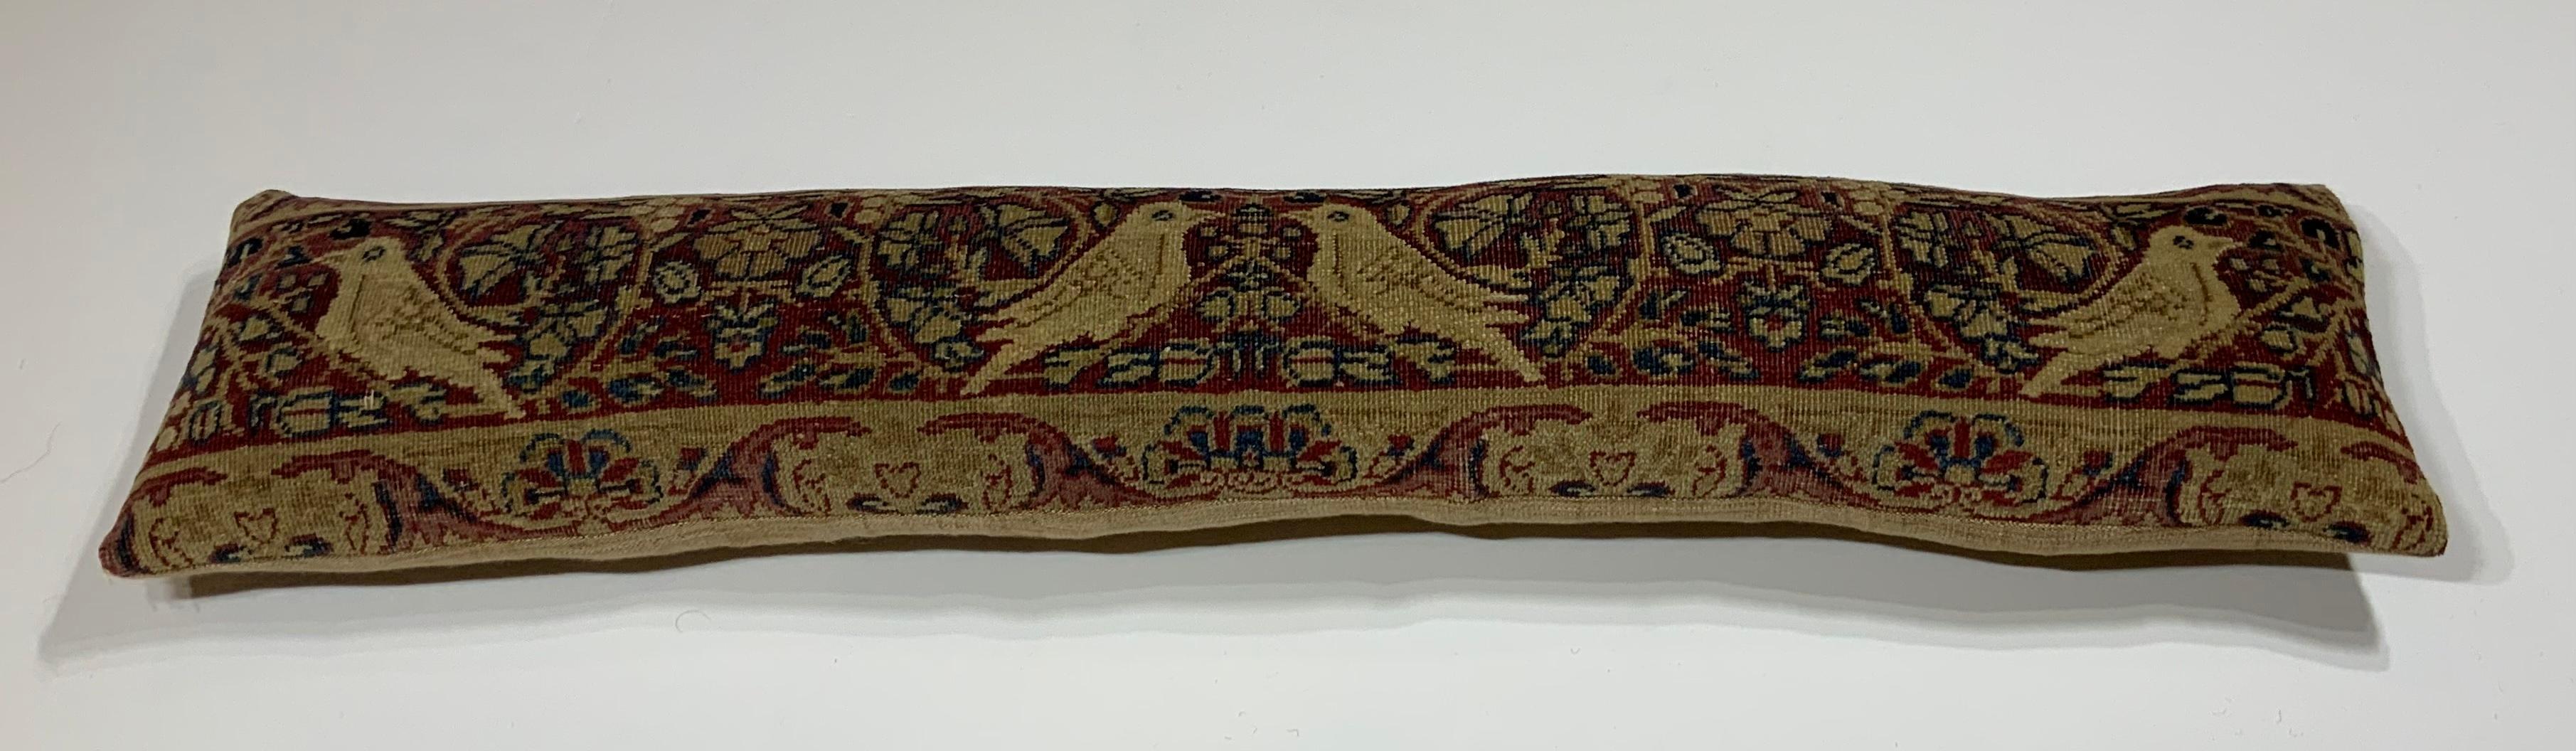 Magnifique coussin en fragment de tapis Lavar Carmon ancien du 19e siècle, tissé à la main, représentant quatre oiseaux entourés de vignes et de fleurs. Insert frais et fin, dos en lin de qualité.
Le fragment est à laver à la main avant de devenir